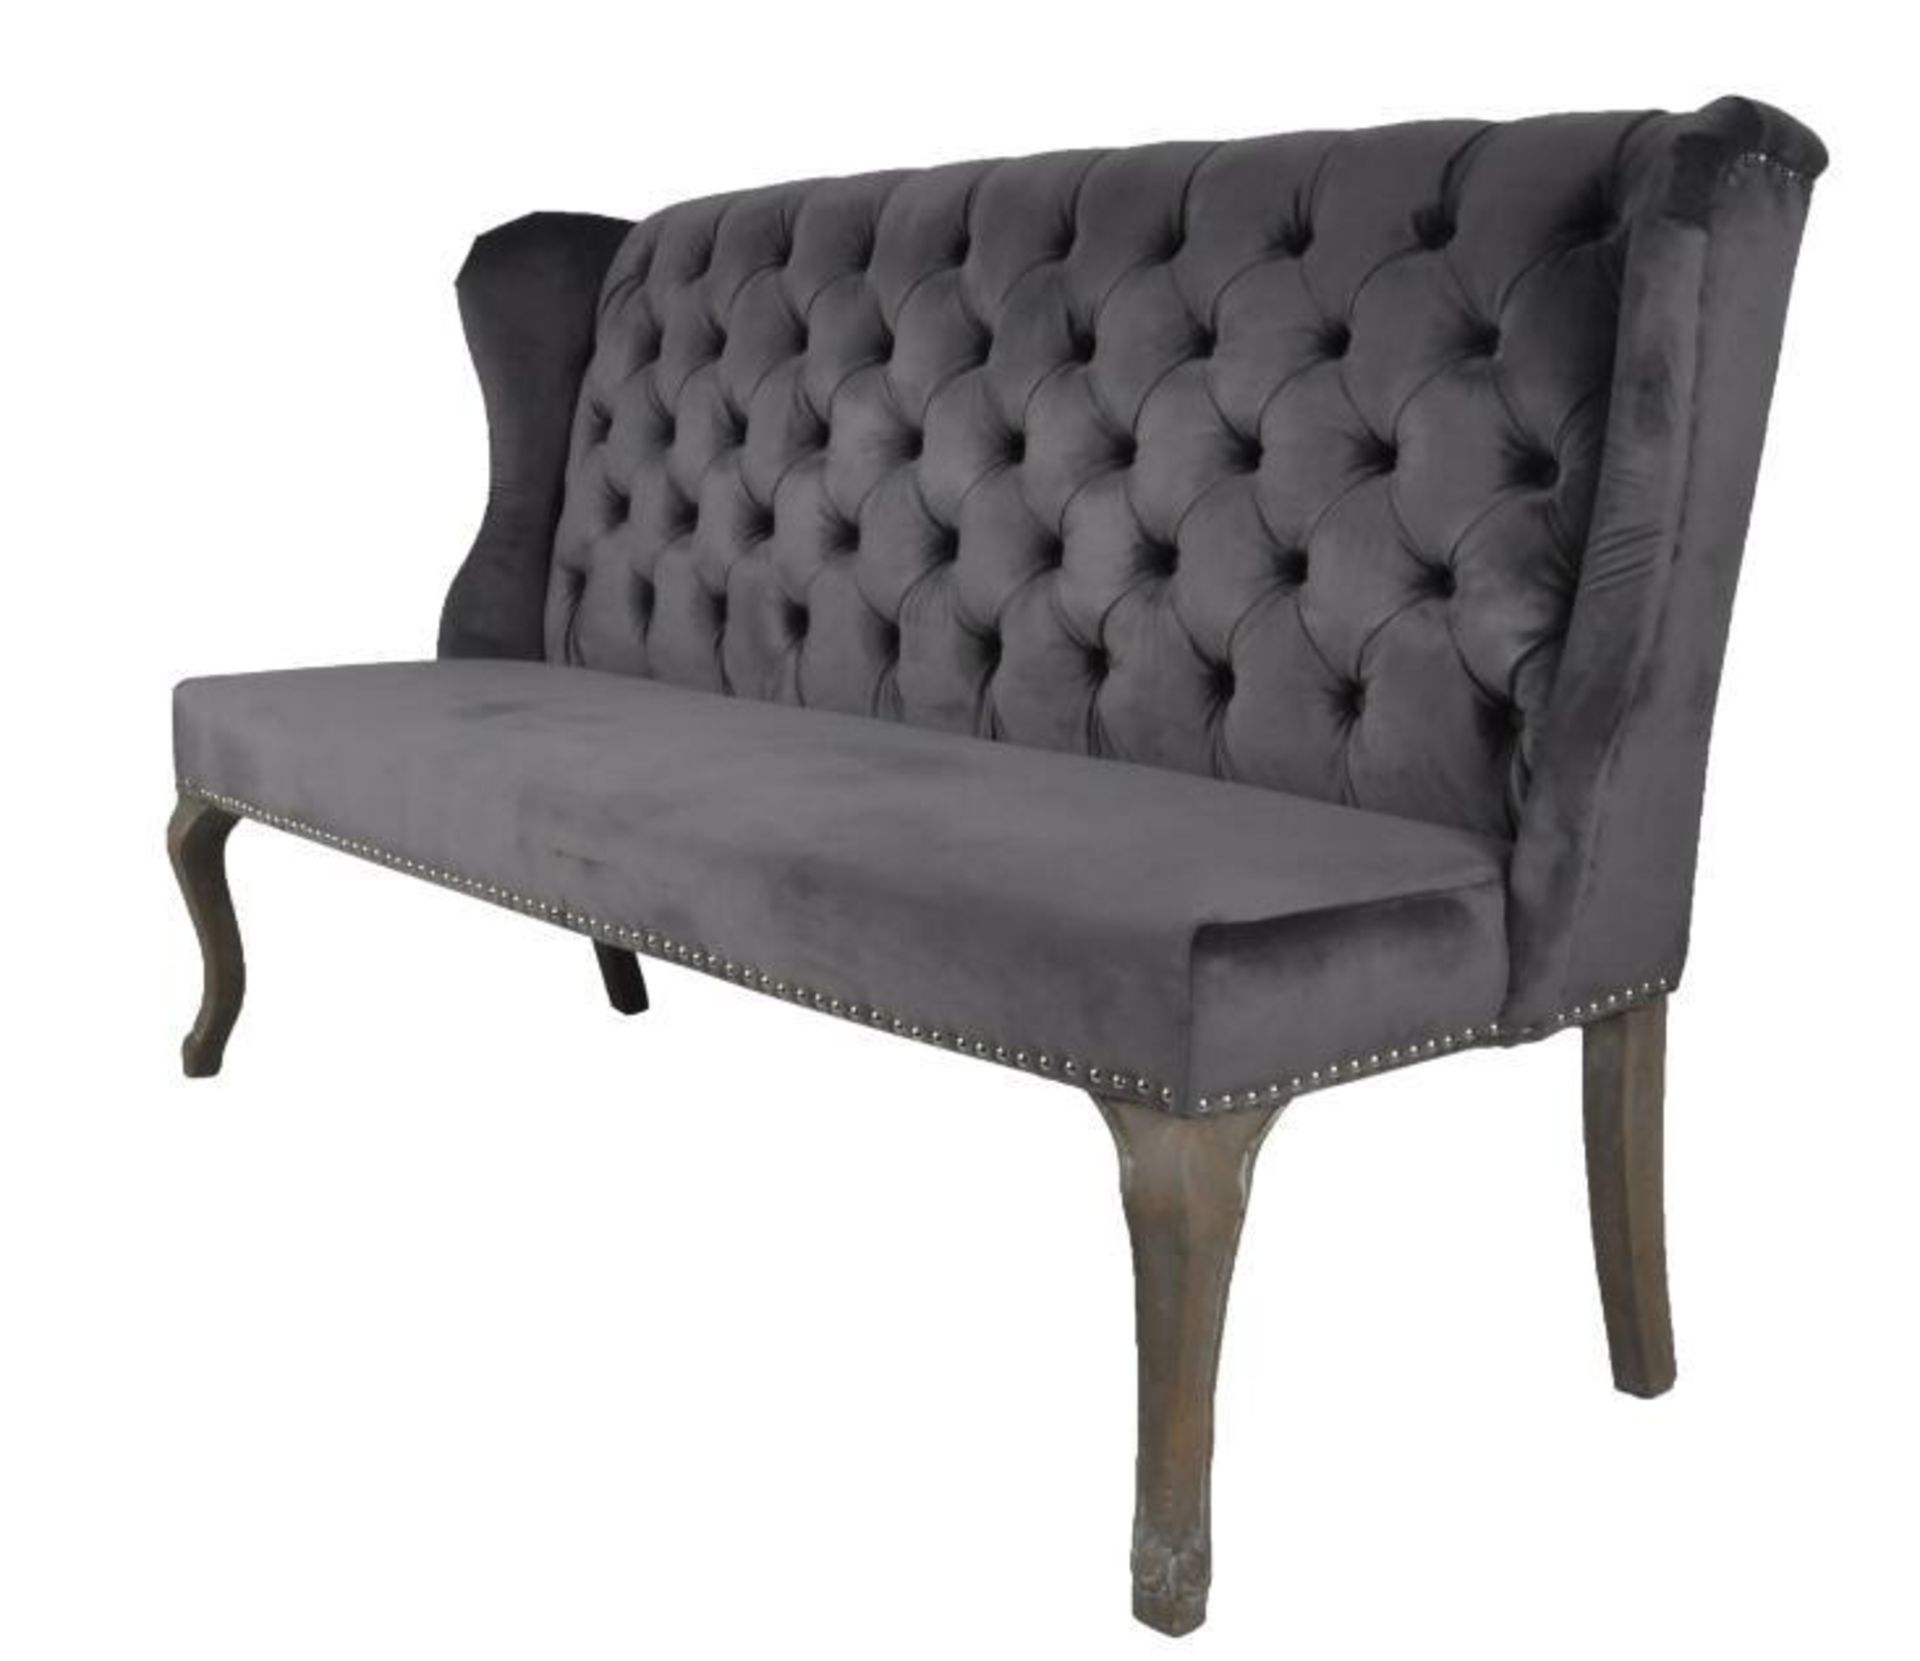 1 x HOUSE OF SPARKLES 'Jasper' Luxury Dining Sofa Bench - Richly Upholstered In Dark Grey Velvet -